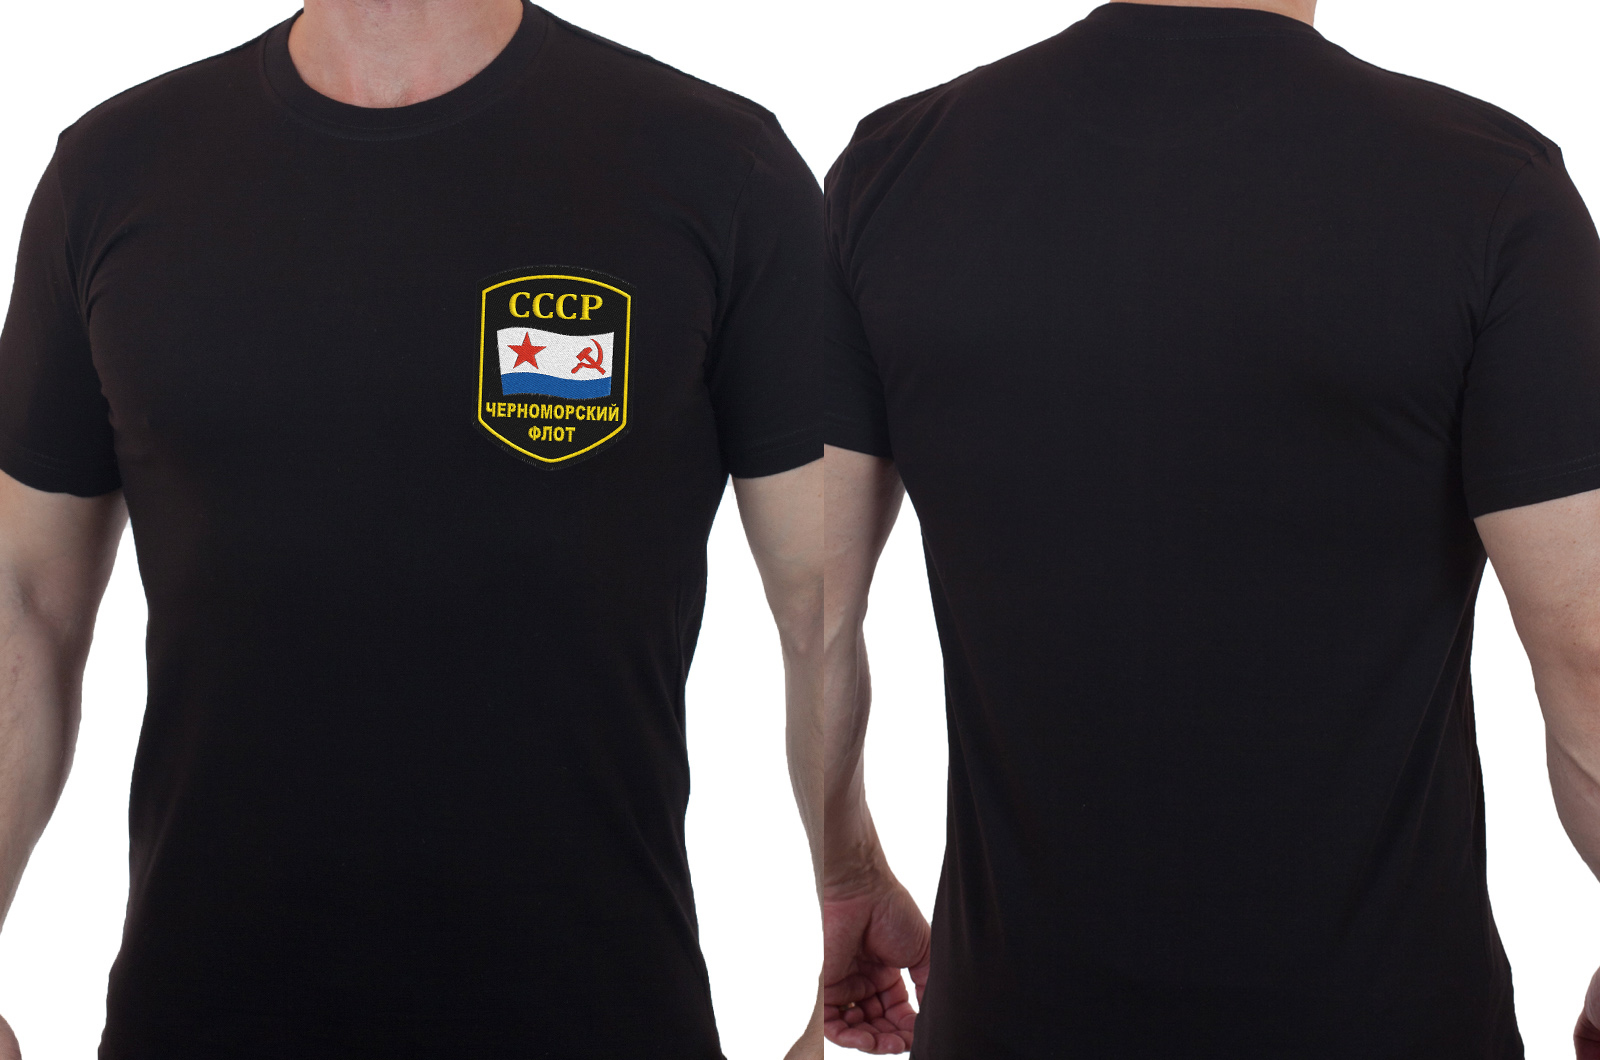 Купить черную футболку с вышивкой ВМФ СССР Черноморский Флот оптом выгодно